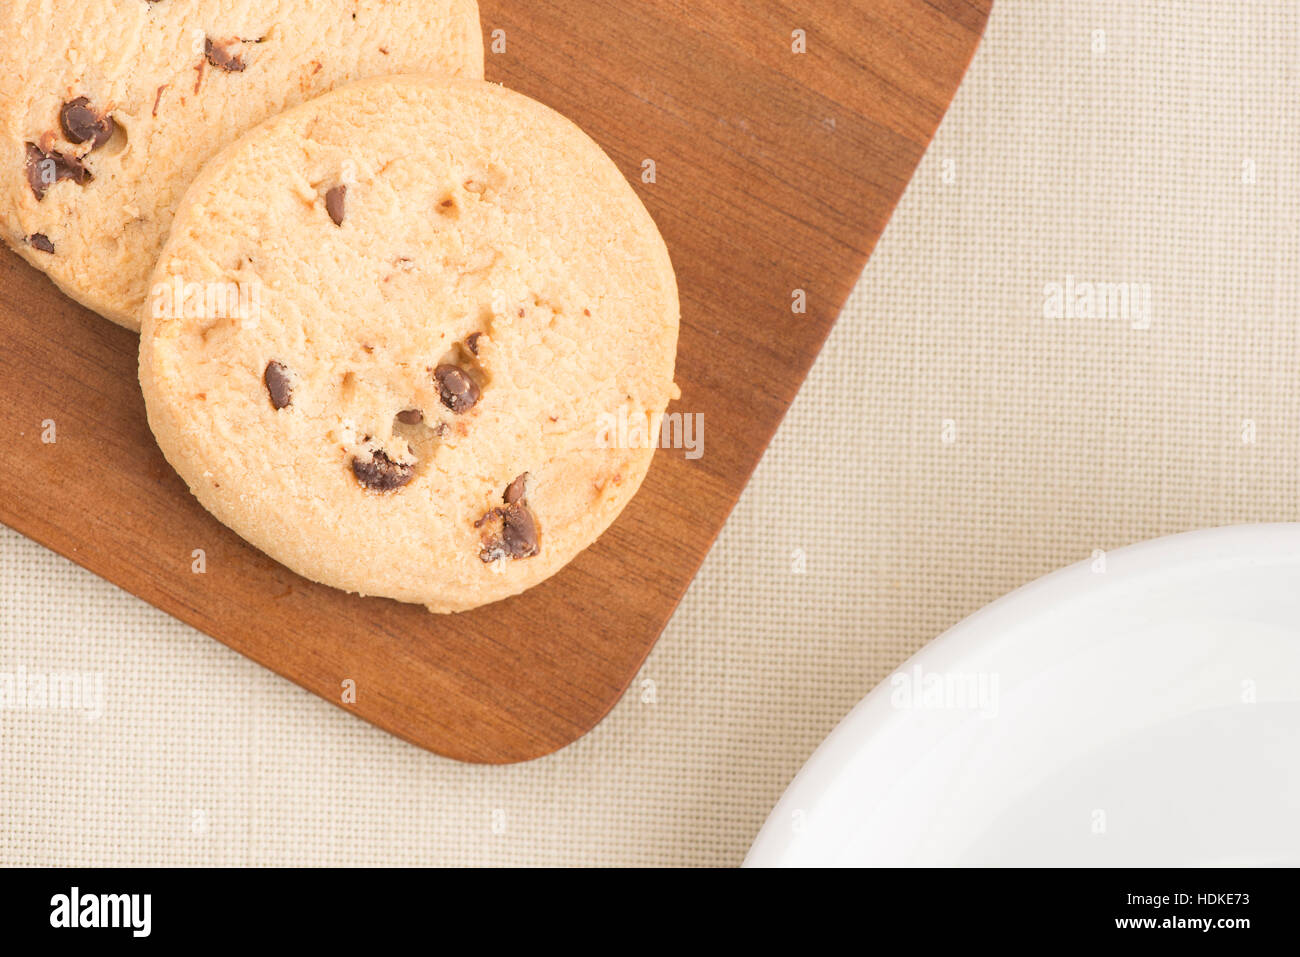 Schokoladenkekse auf hölzernen Schneiden an Bord von oben in der Nähe auf. Süße Speisen, Nachtisch oder Snack. Die Cookies werden auf einem Küchentisch serviert. Stockfoto